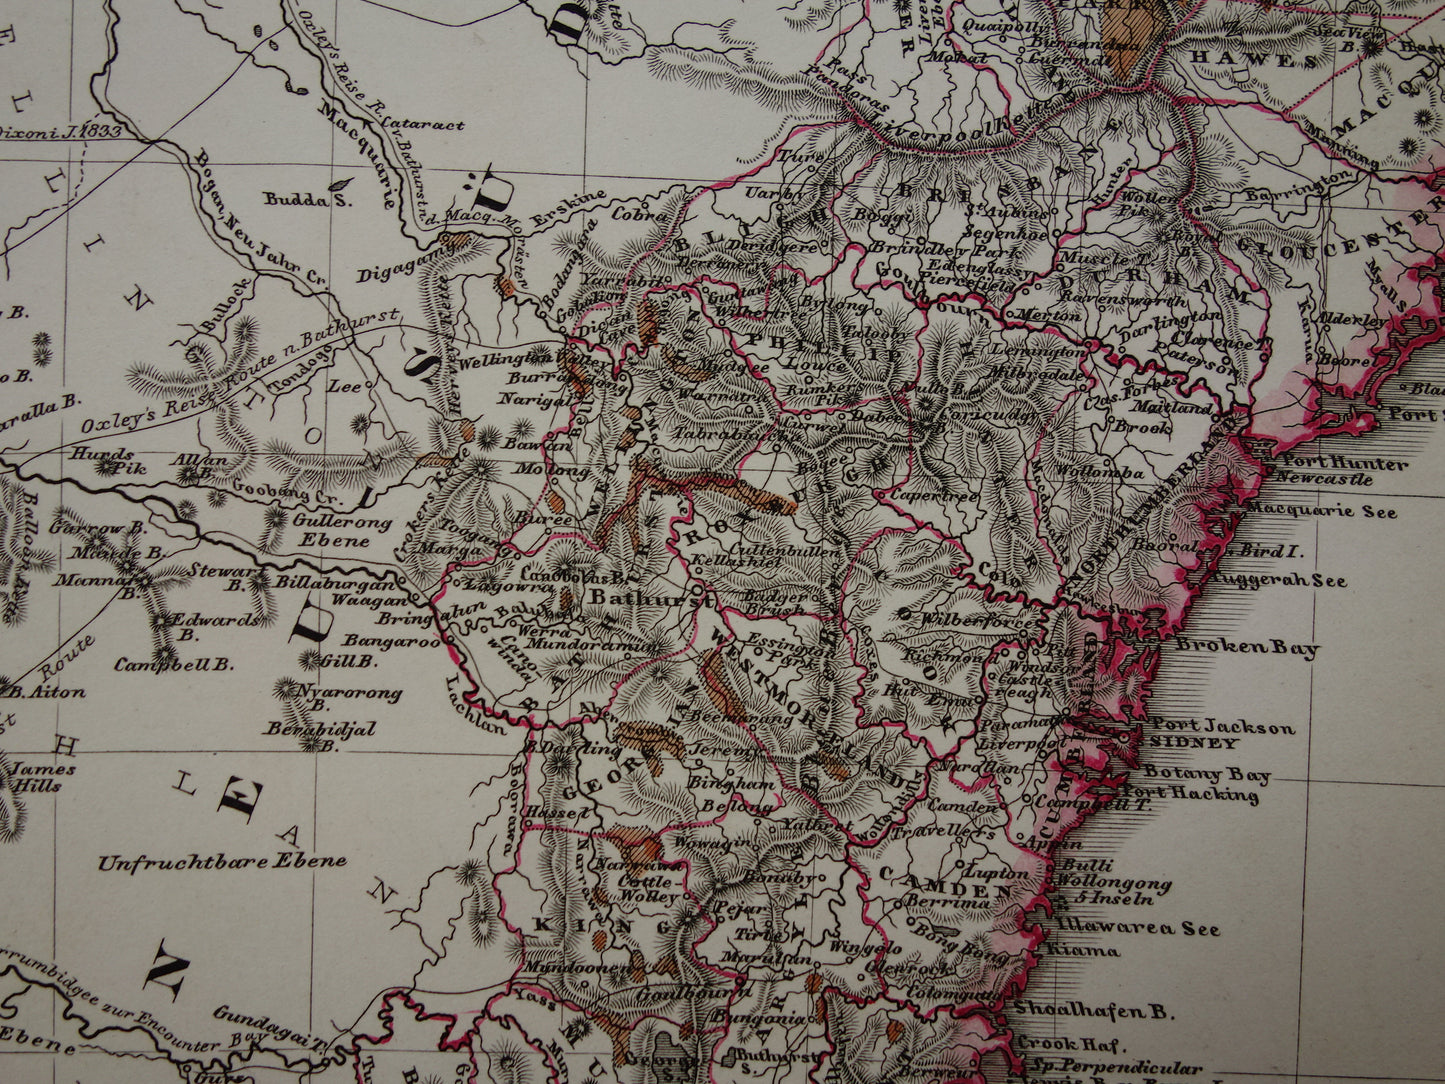 AUSTRALIE grote oude kaart van zuidoost Australië in 1859 originele antieke Duitse landkaart - vintage landkaarten